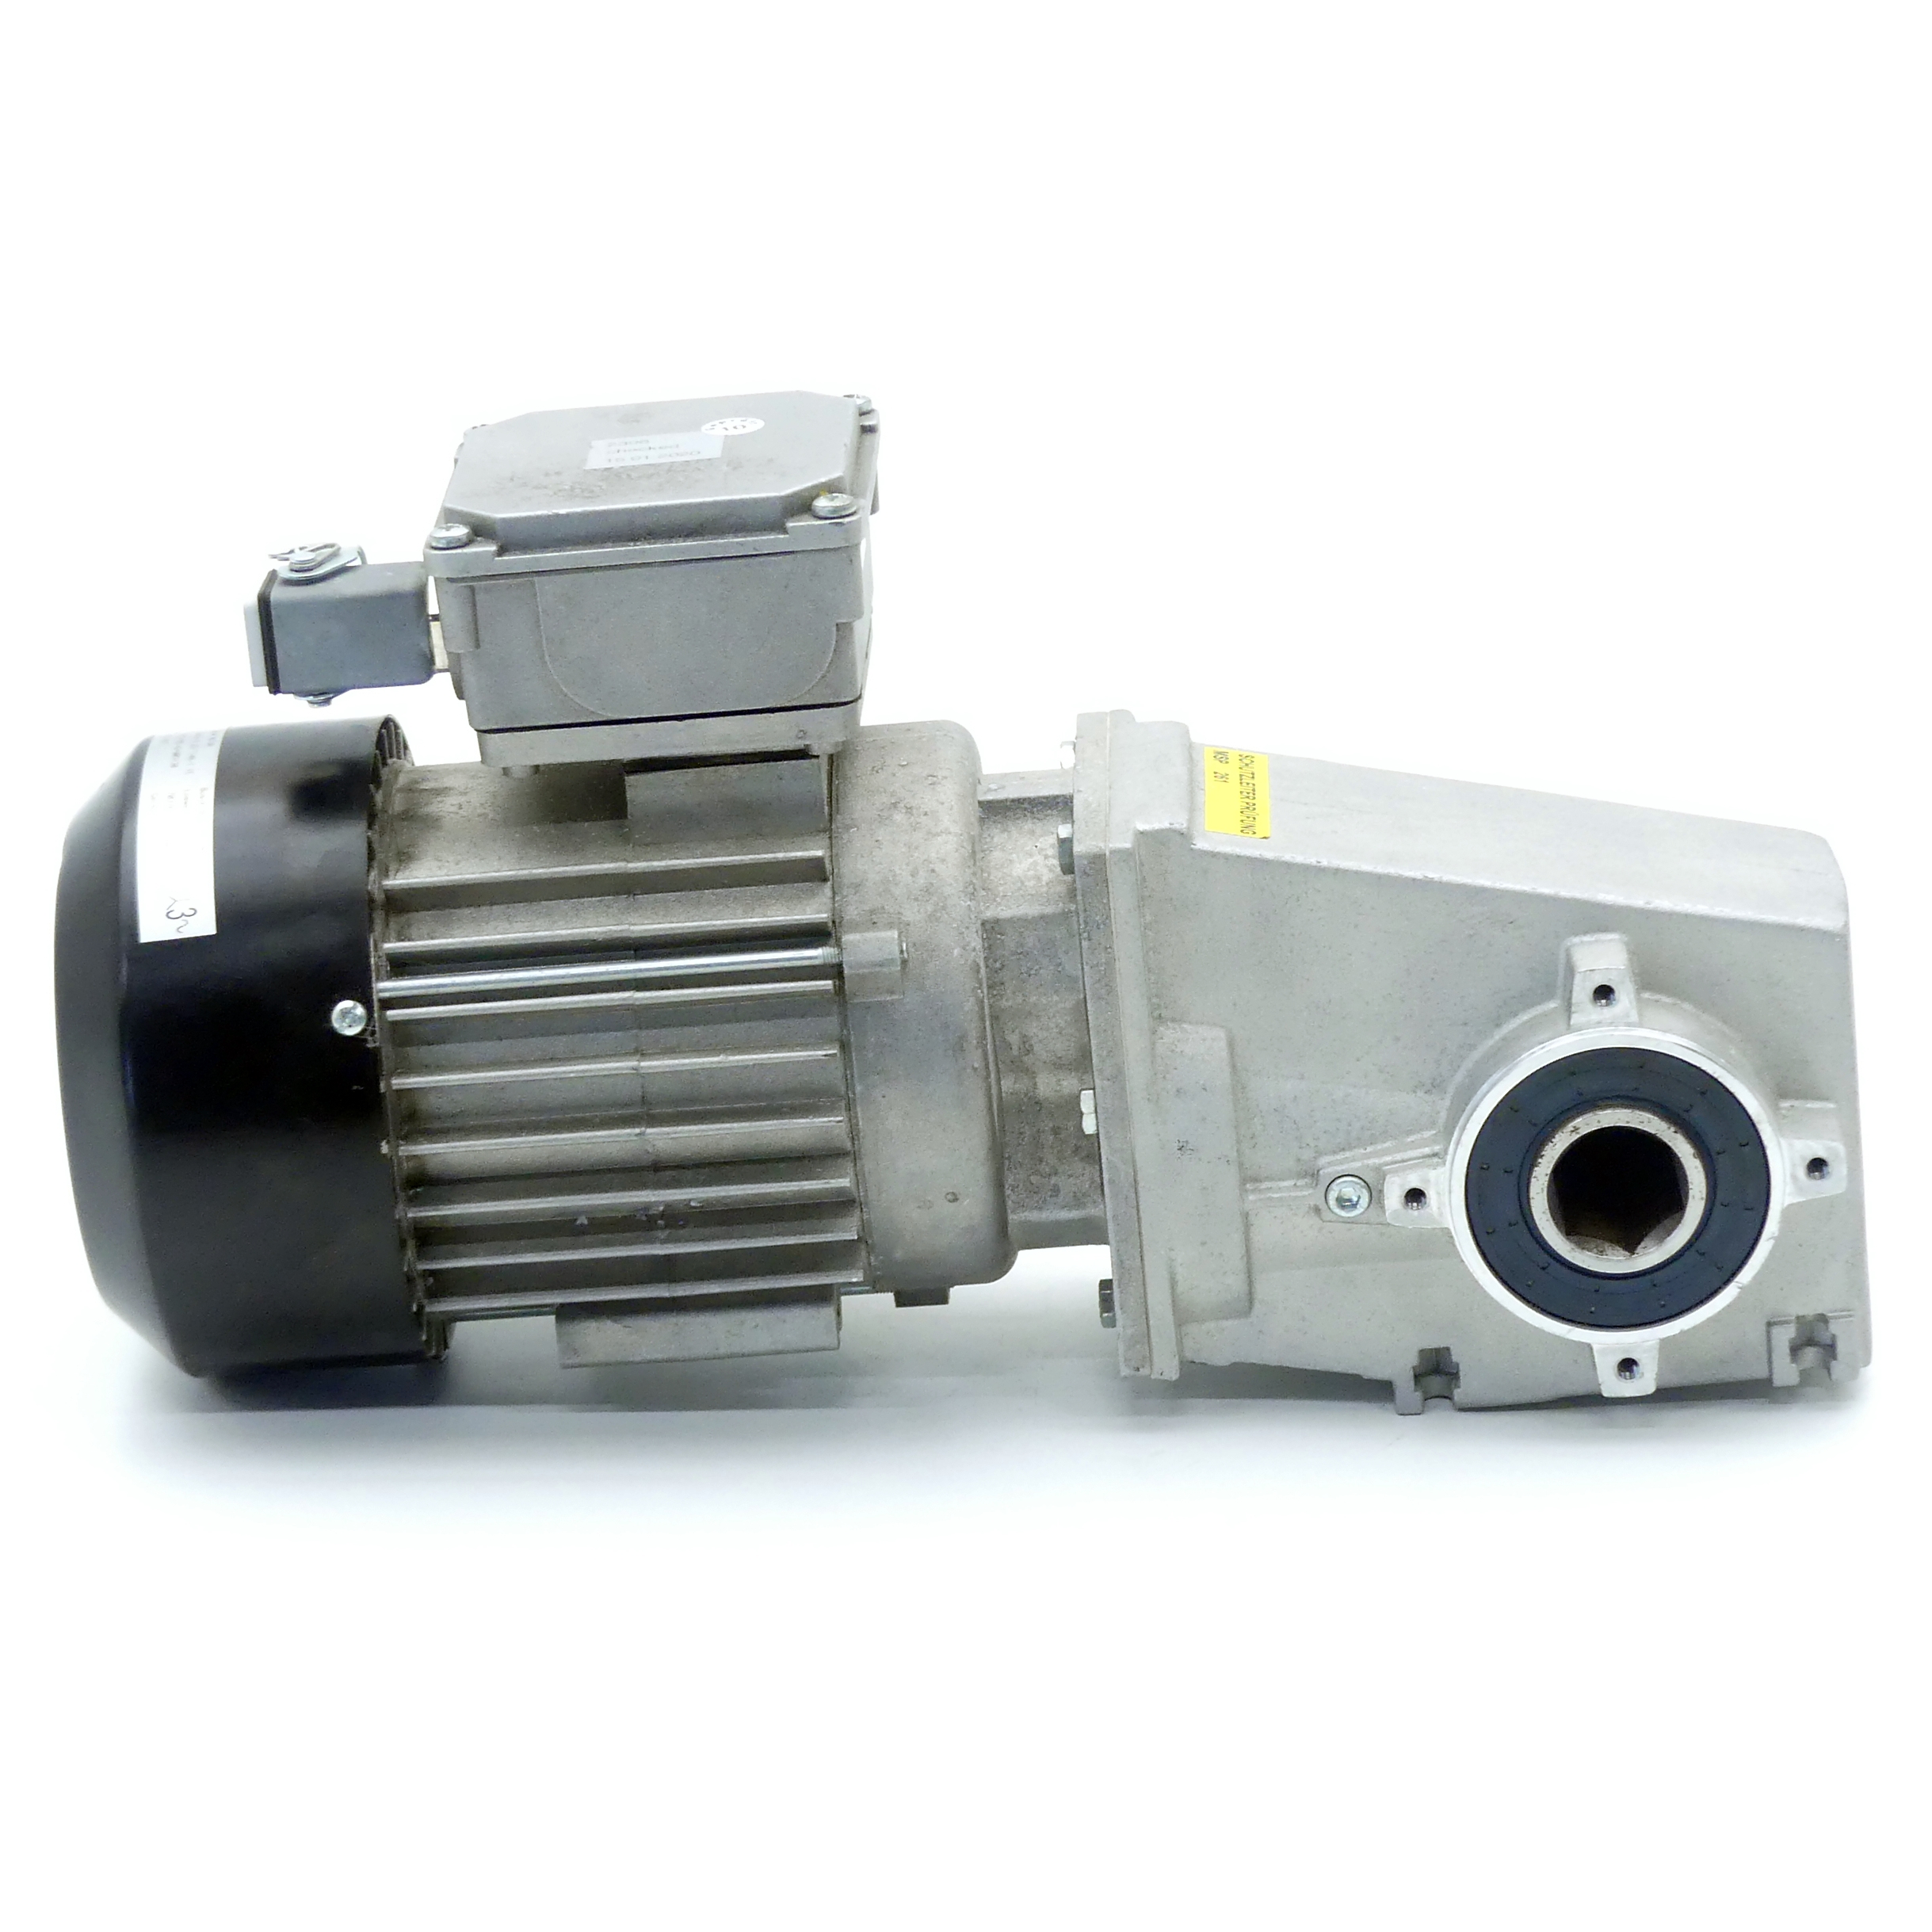 Gear motor GKM16-3 23/714B-Y IE 